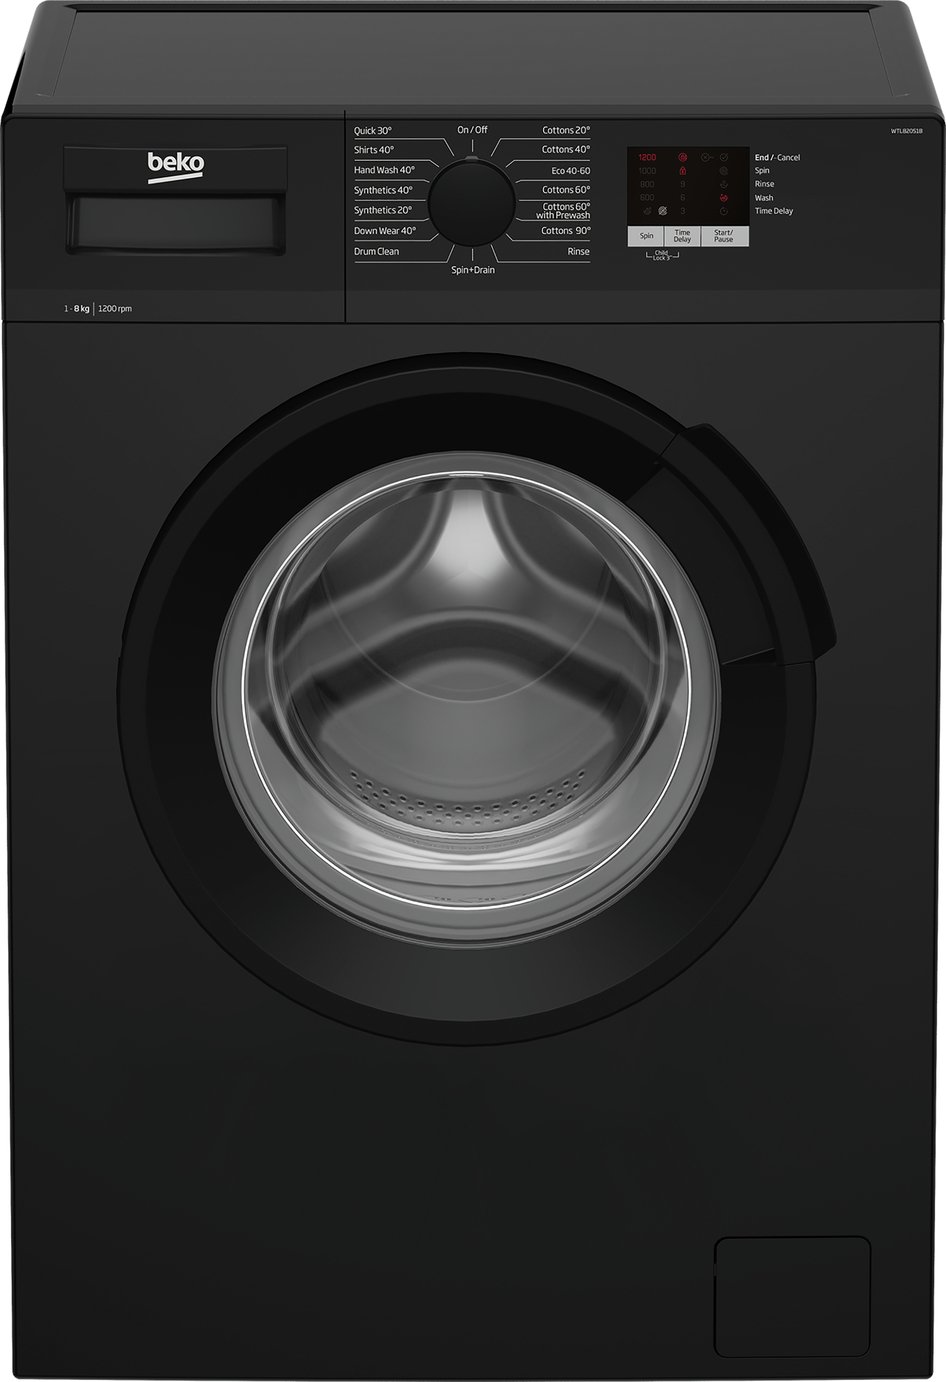 Beko WTL82051B 8KG 1200 Spin Washing Machine Review